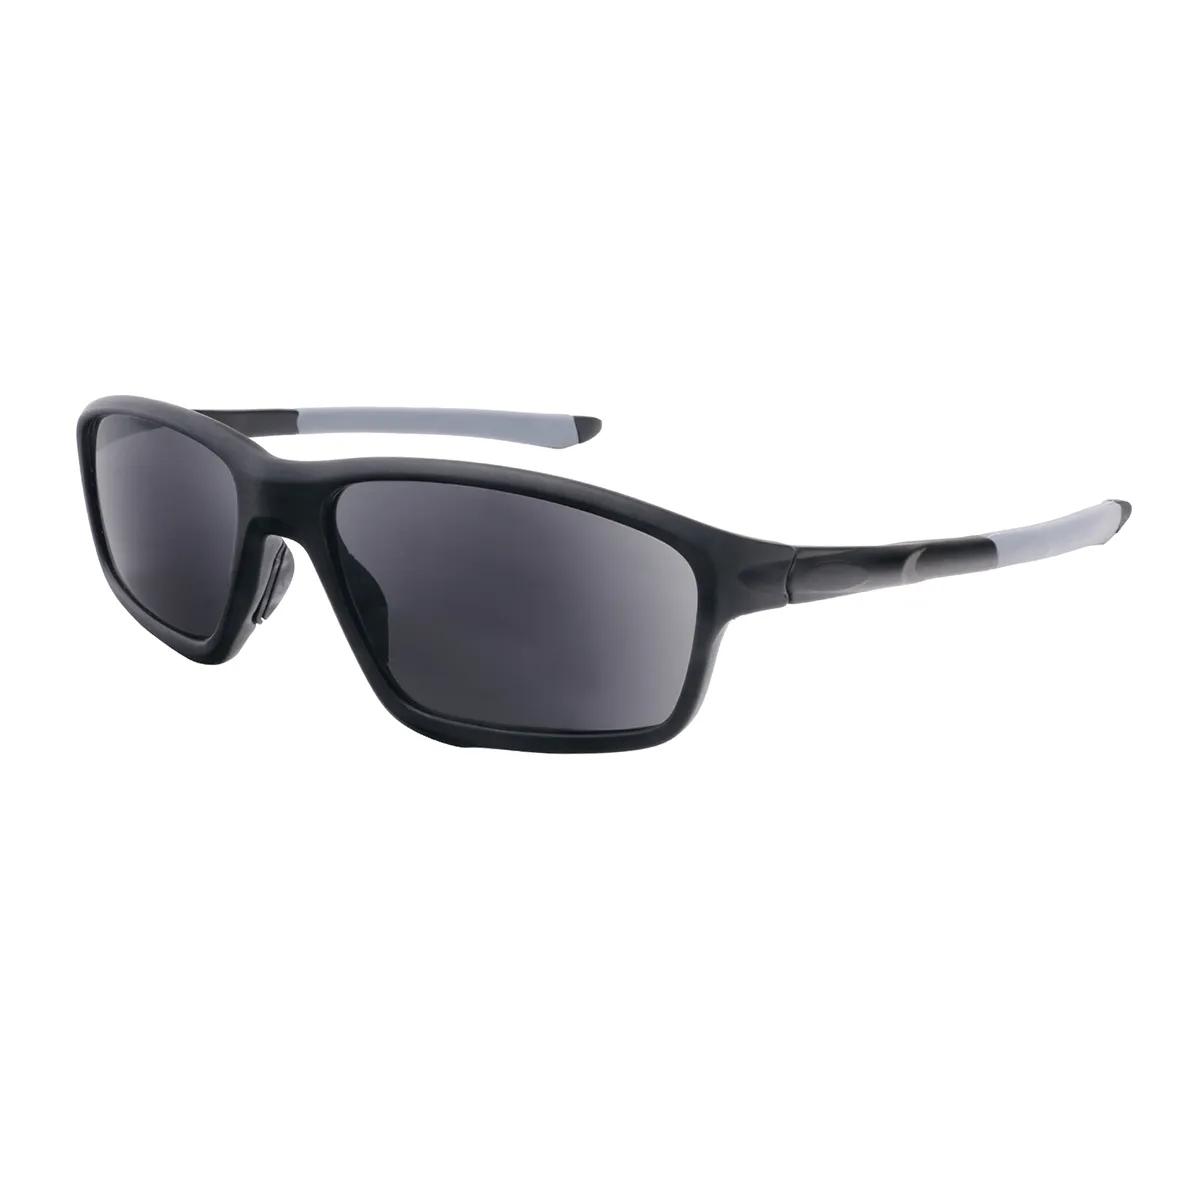 Luman - Rectangle Black Sunglasses for Men & Women